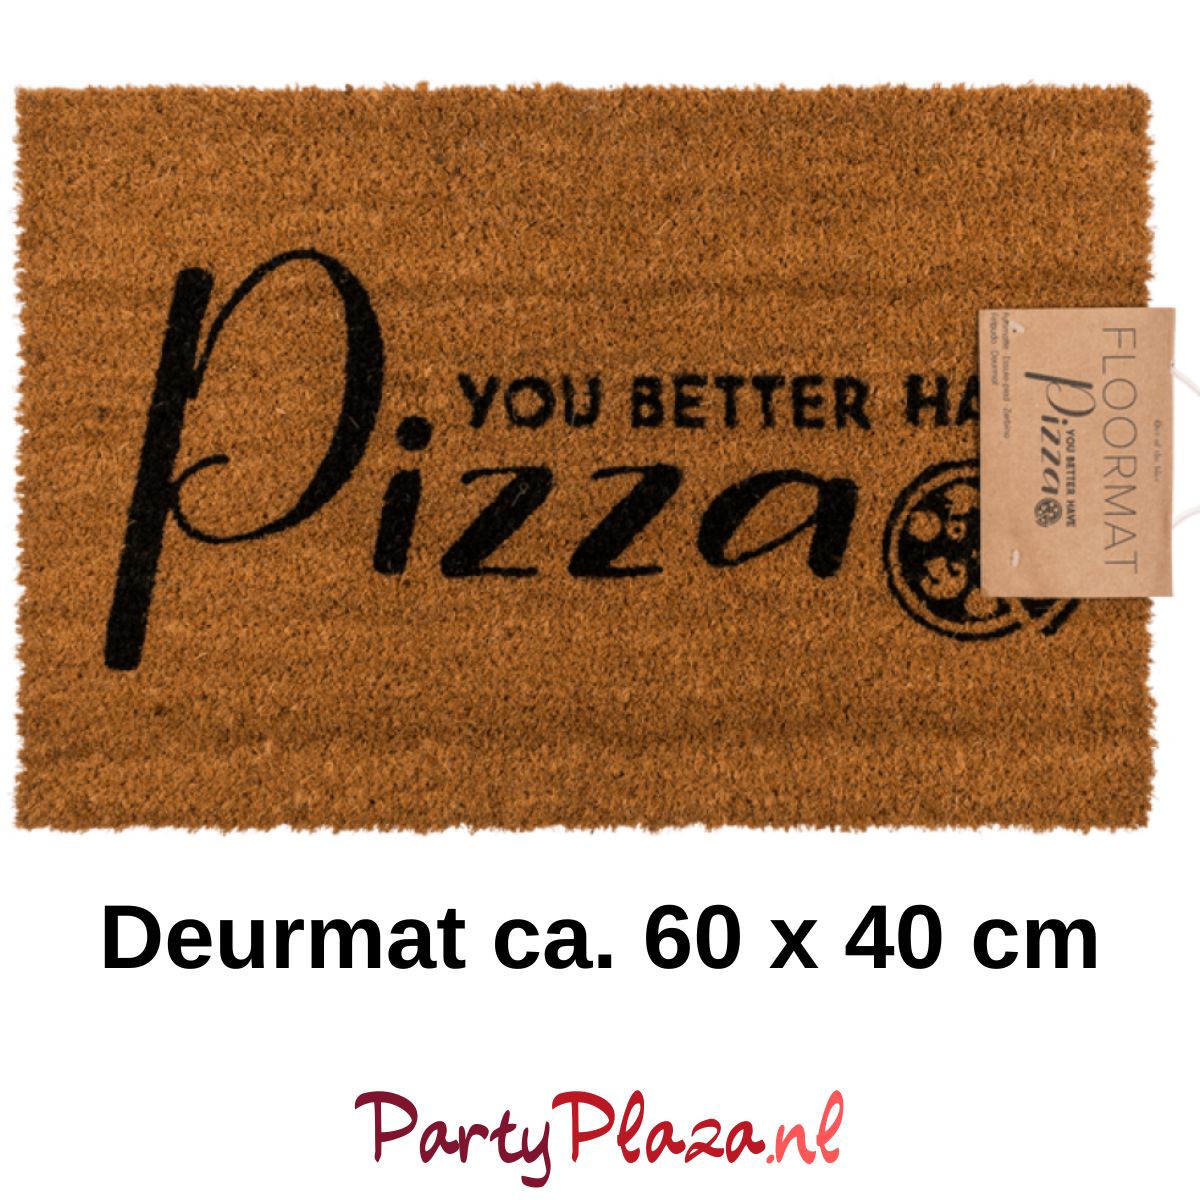 wimper ik ben gelukkig Misschien Deurmat met grappige tekst - You better have Pizza - 60x40cm